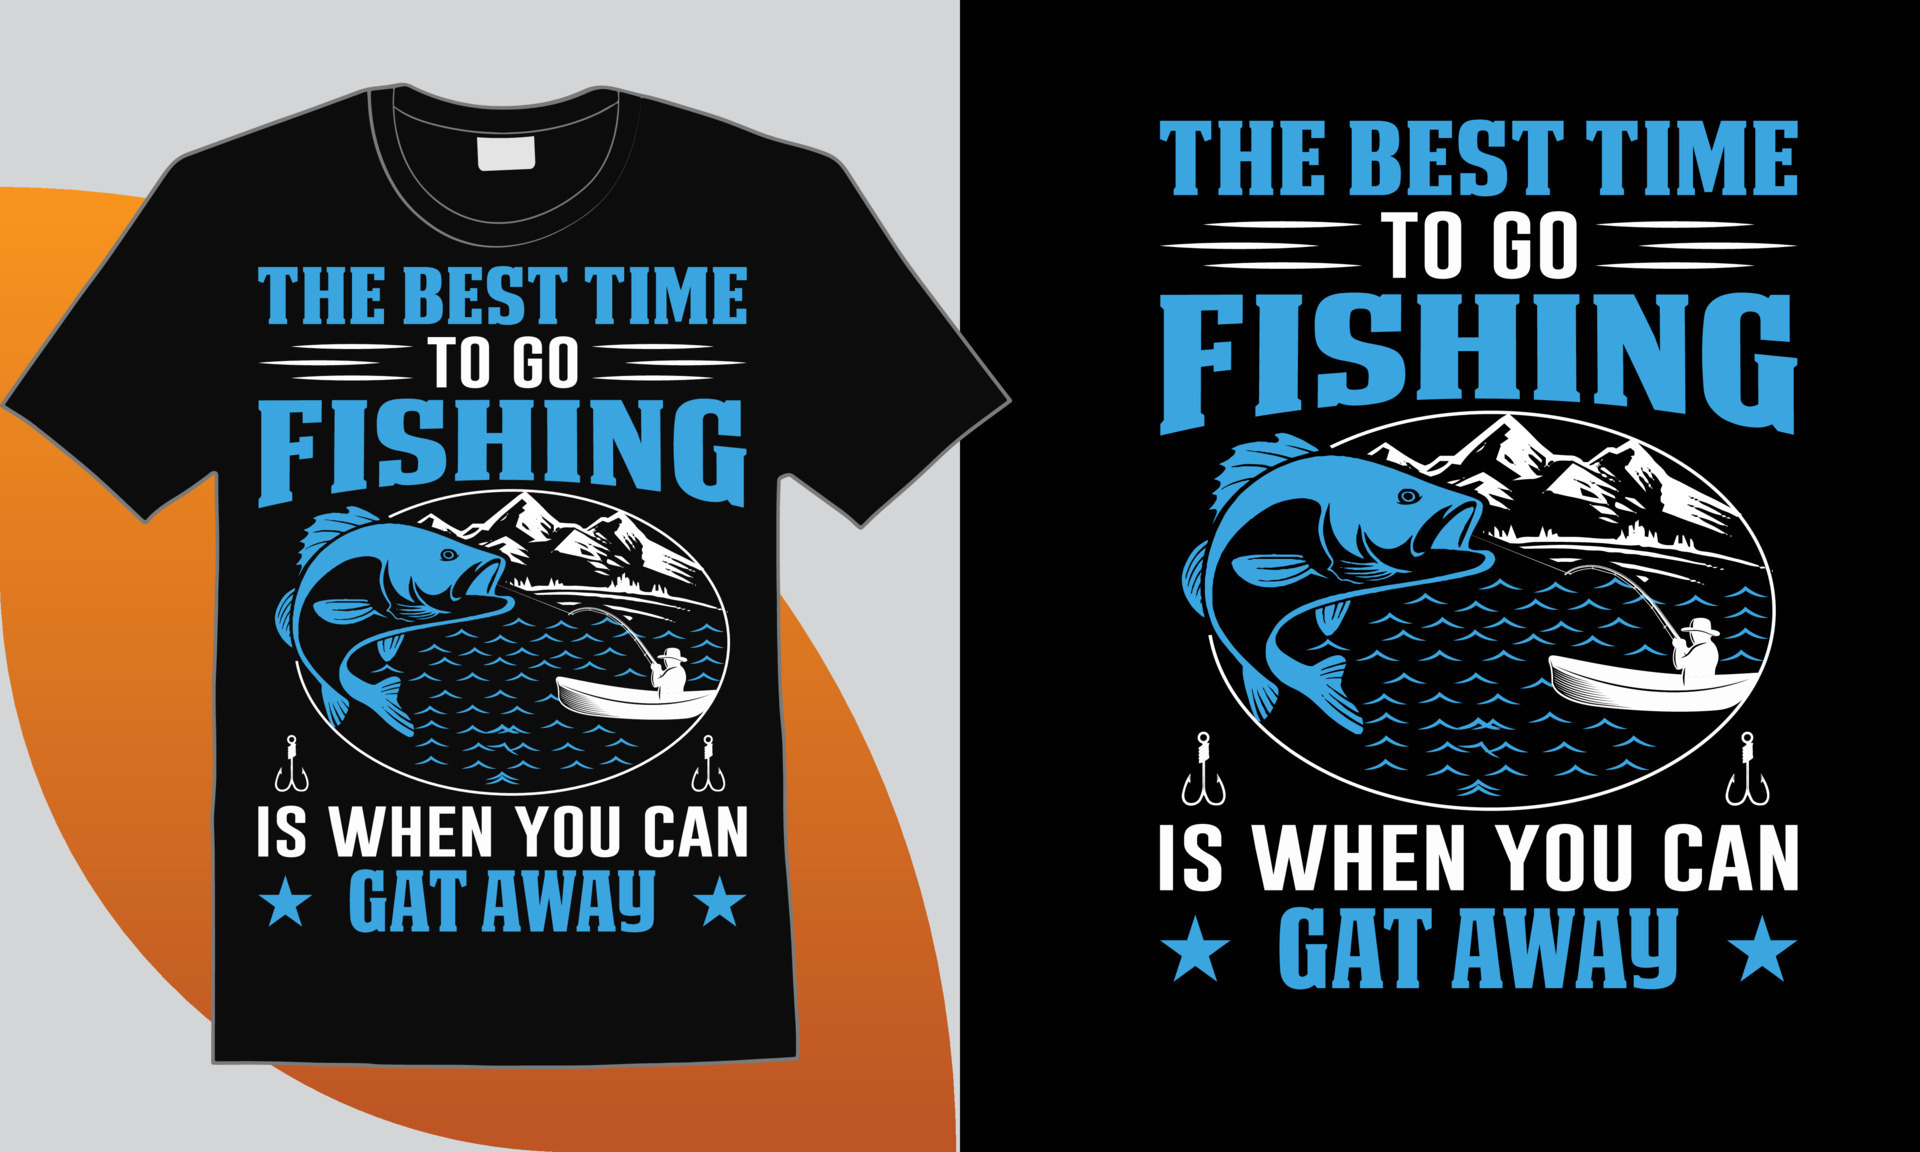 Fishing T-shirt Design Quotes, Fish Tee 10831736 Vector Art at